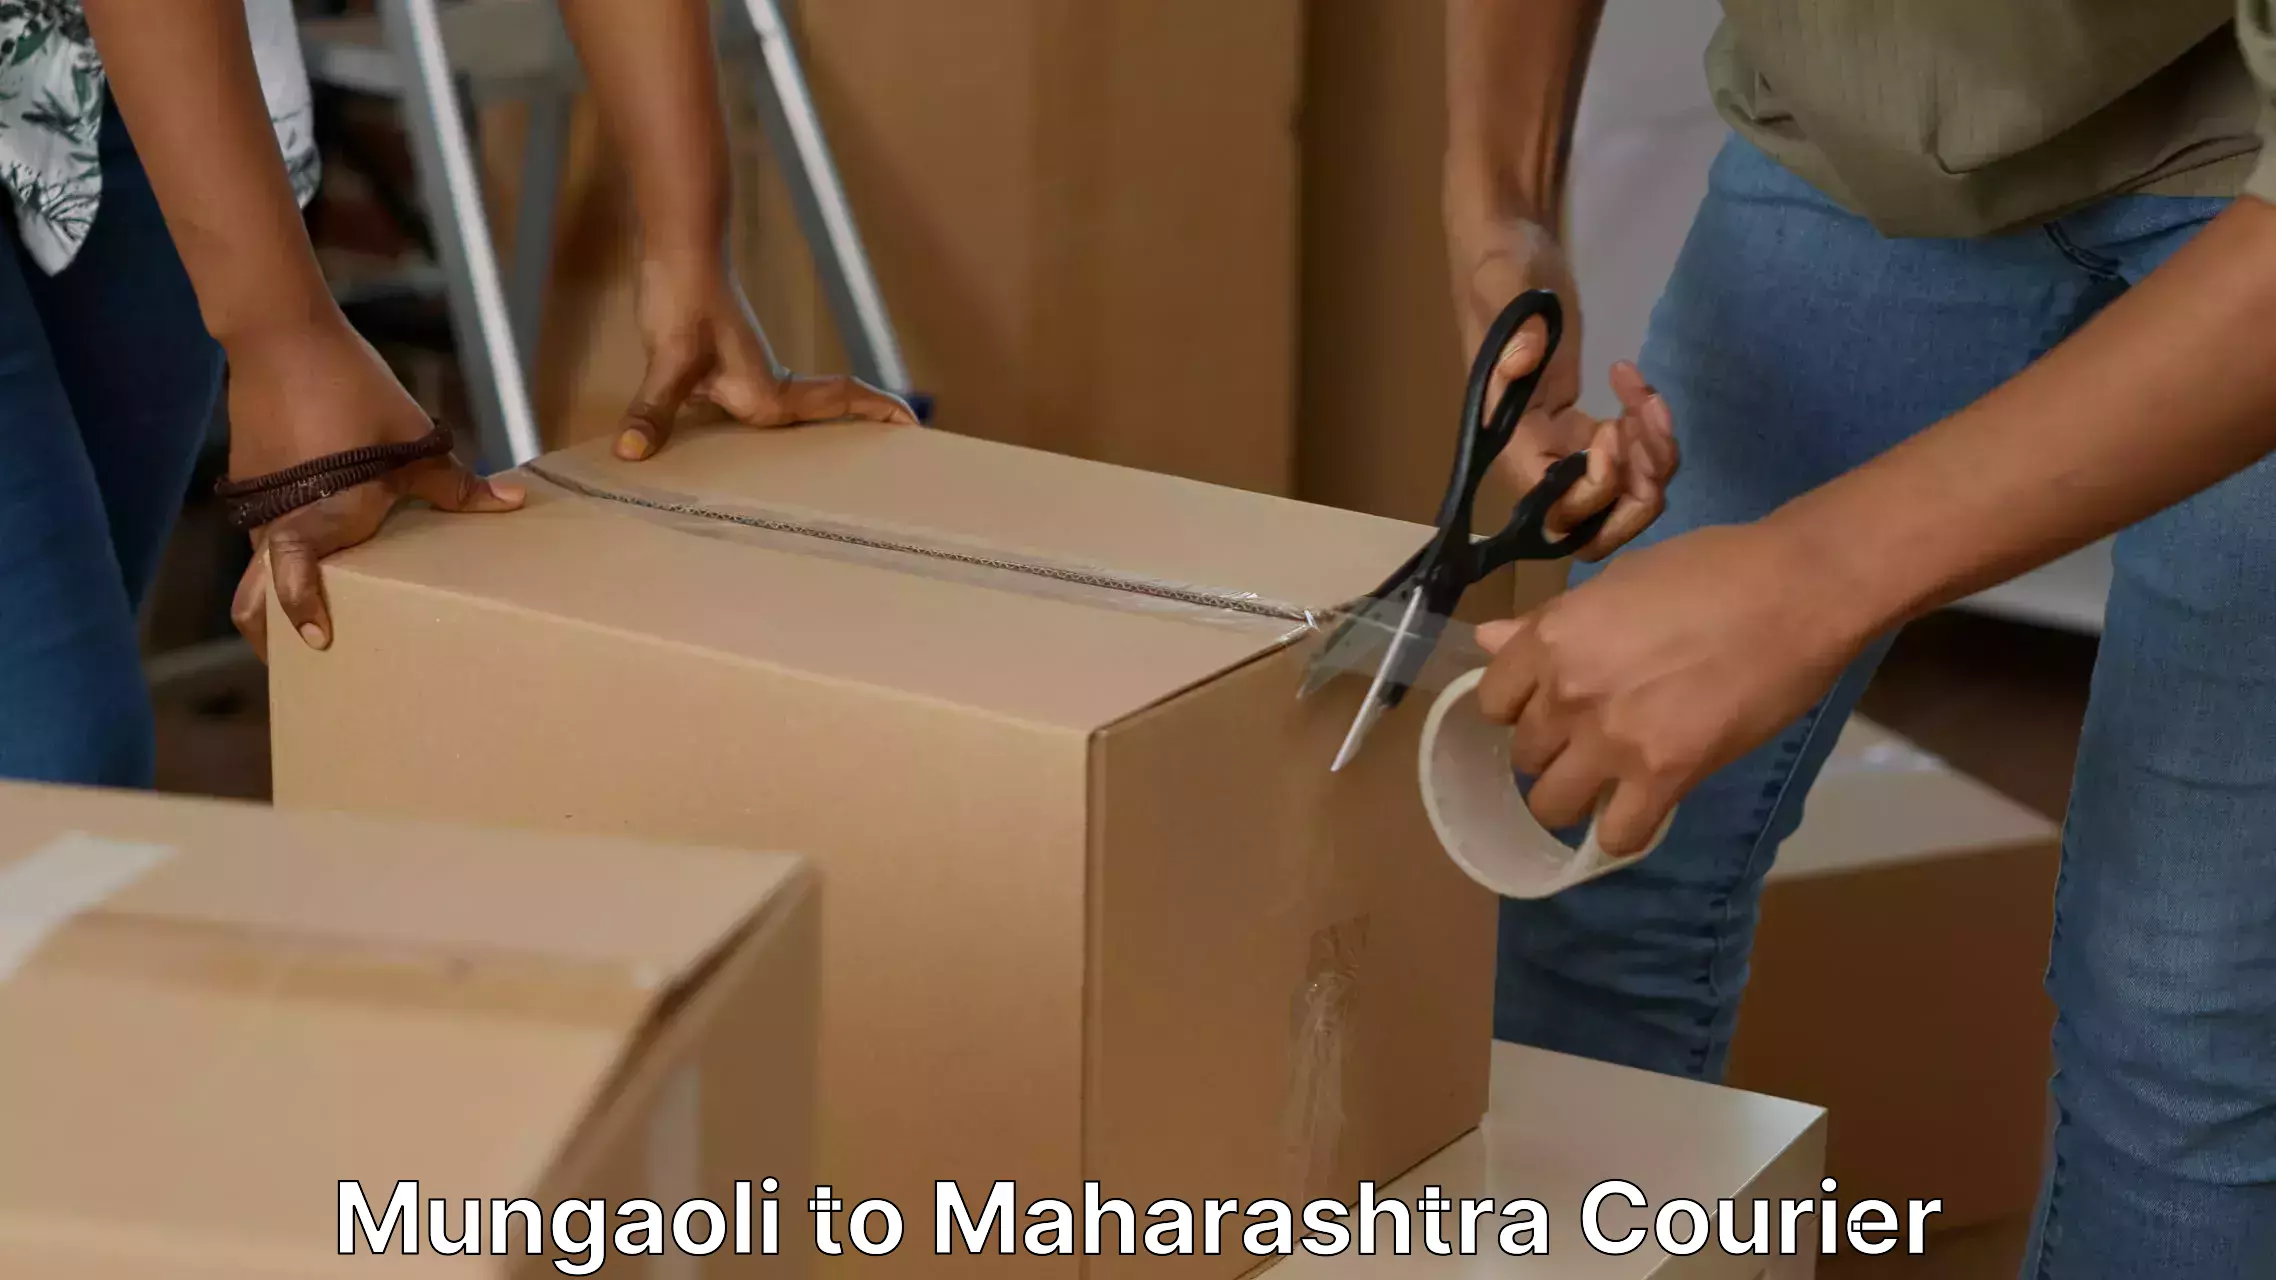 Furniture moving service Mungaoli to Maharashtra